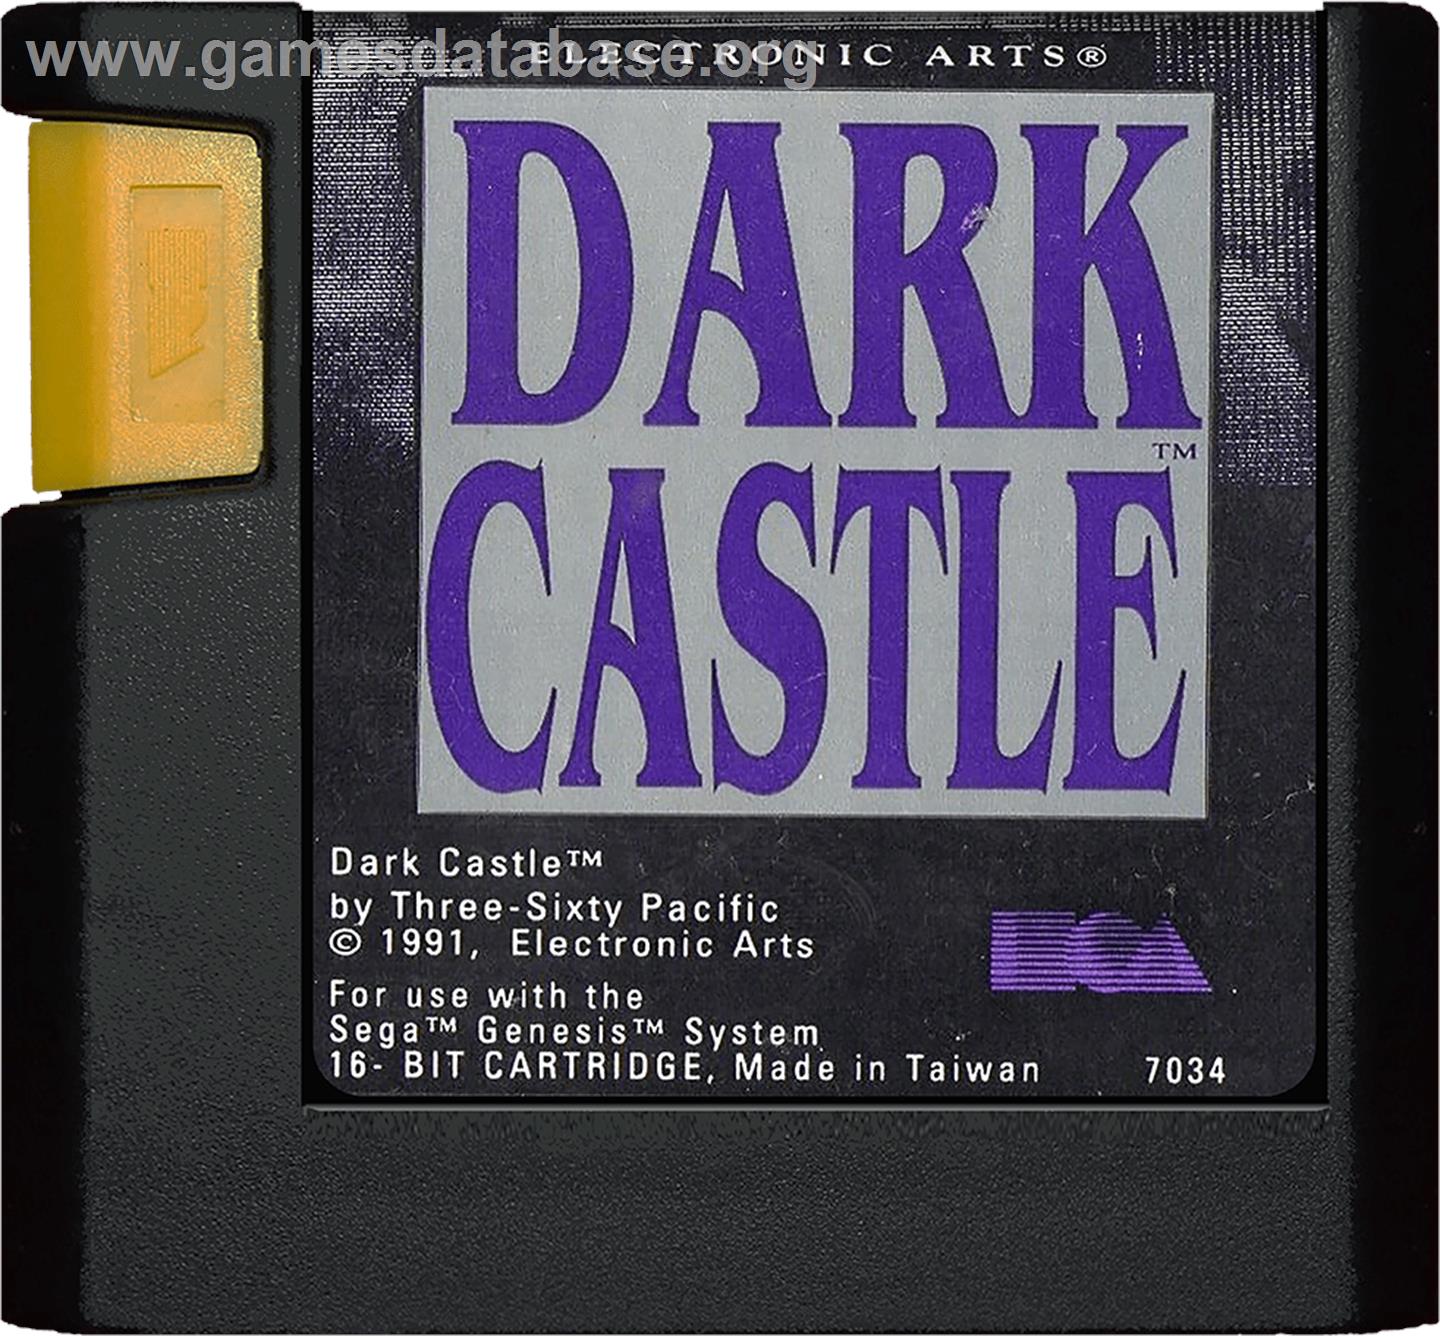 Dark Castle - Sega Genesis - Artwork - Cartridge